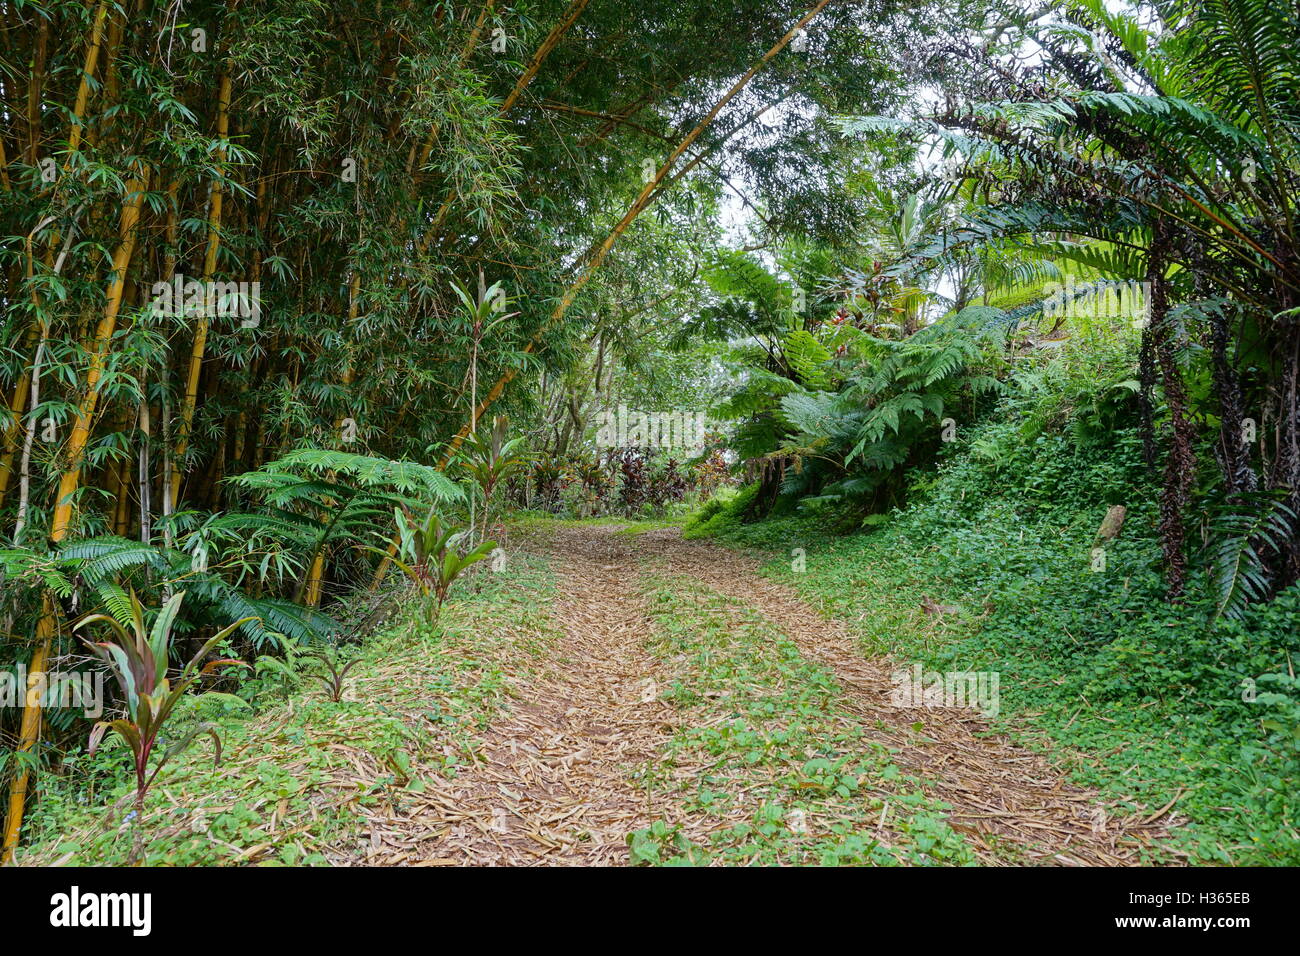 La vegetación tropical y un camino que conduce a las alturas de la isla Rurutu, Pacífico Sur, austral archipiélago, Polinesia Francesa Foto de stock